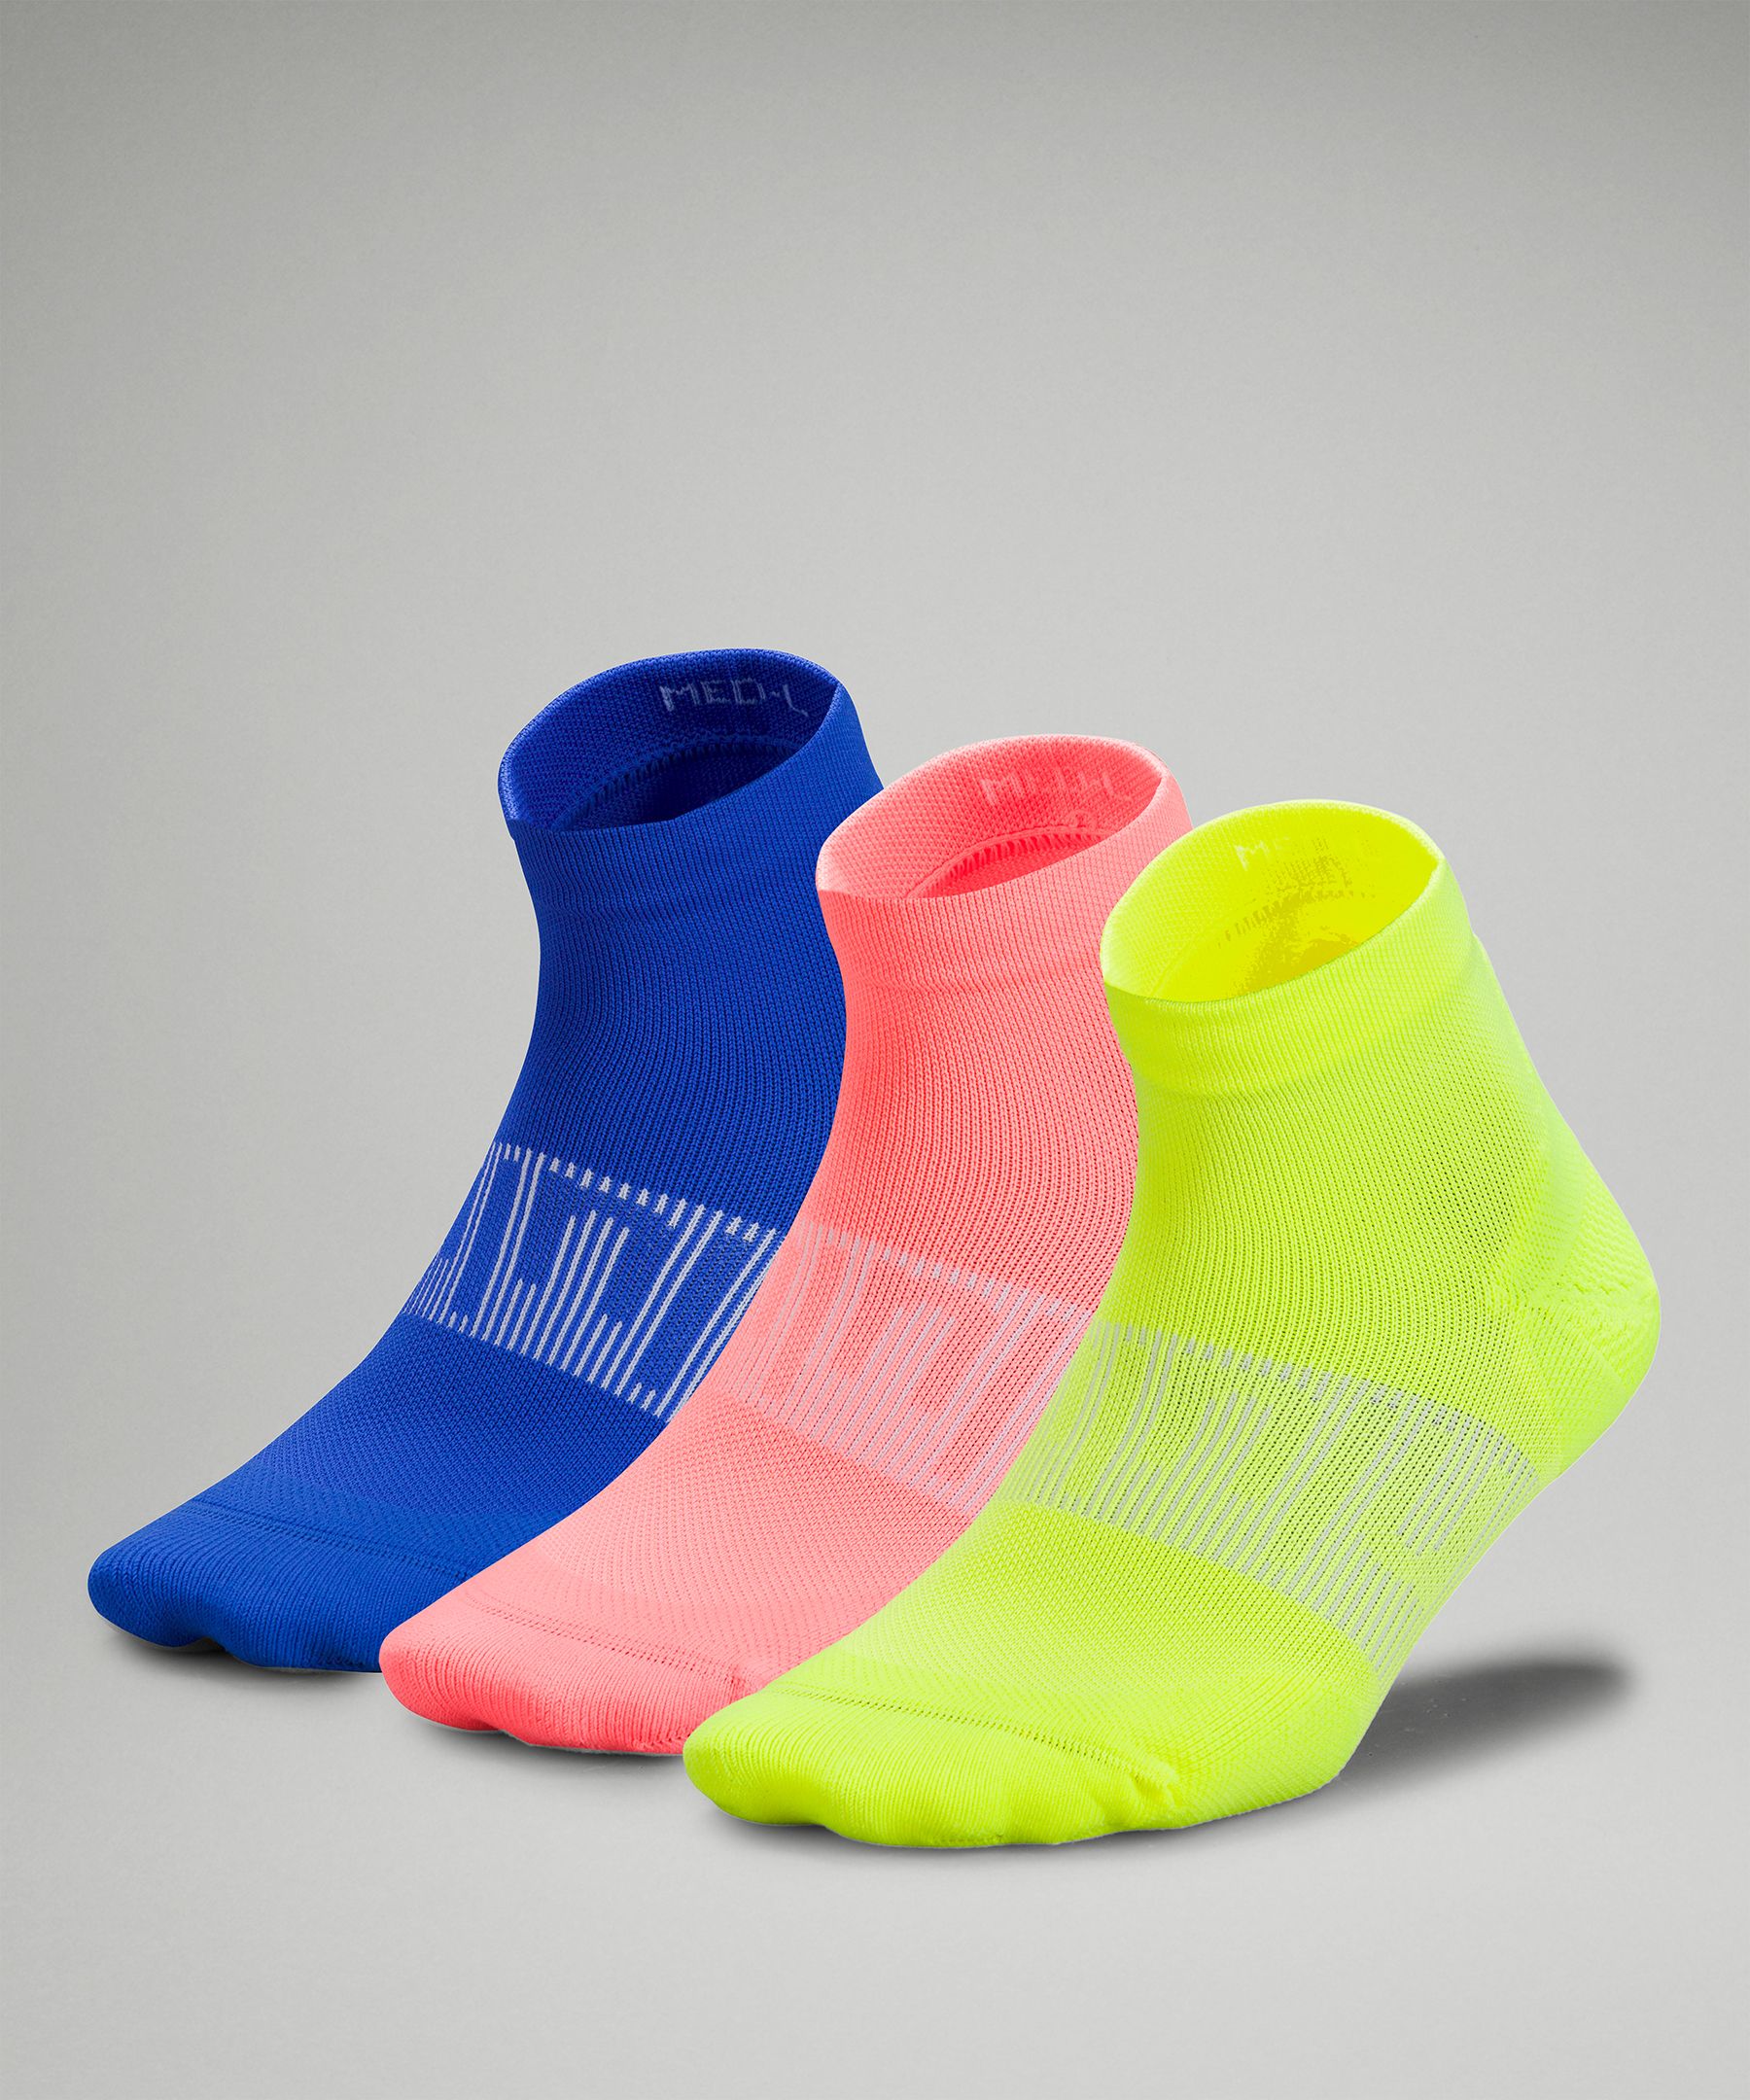 Lululemon Power Stride Ankle Socks 3 Pack In Highlight Yellow/sunset/blazer Blue